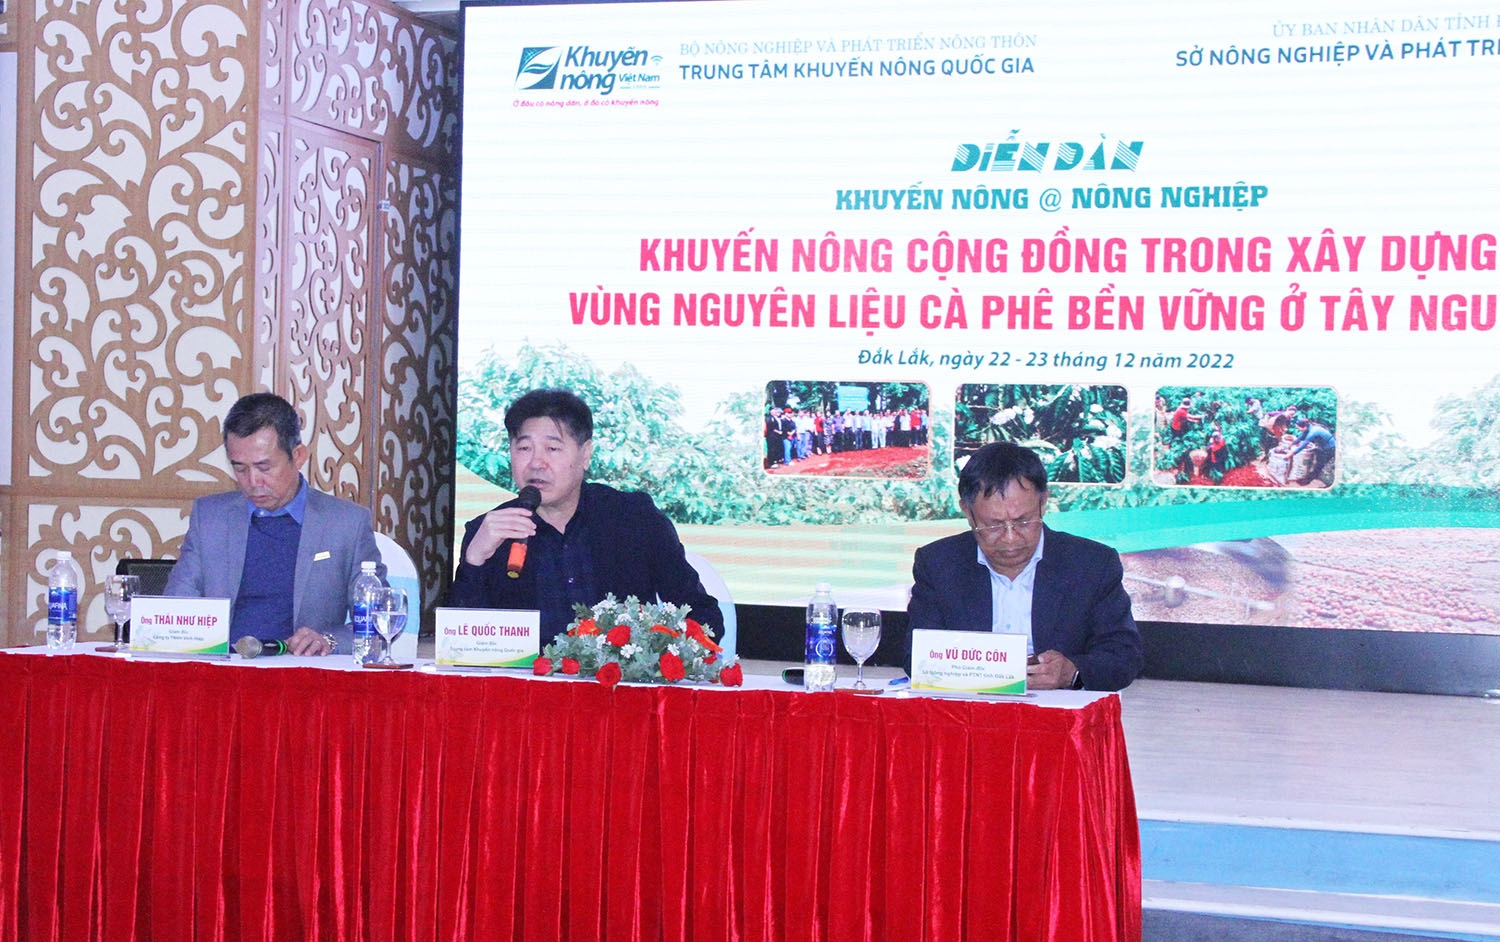 Giám đốc Trung tâm Khuyến nông Quốc gia Lê Quốc Thanh (ở giữa) trao đổi, chia sẻ tại điễn đàn